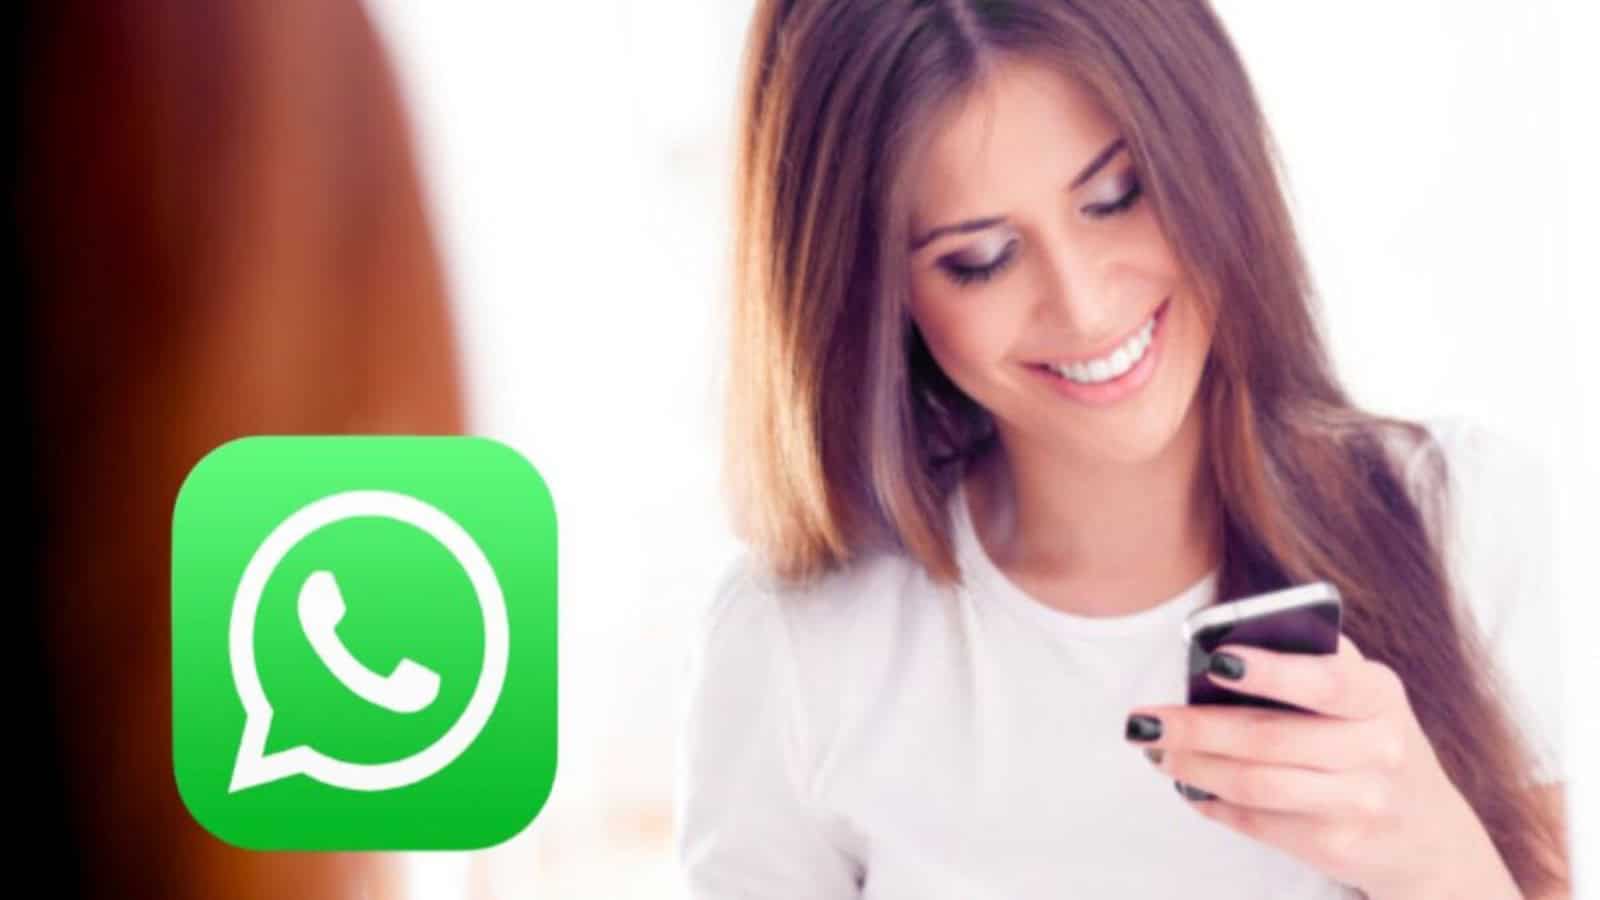 WhatsApp, state attenti: con questo trucco vi possono spiare